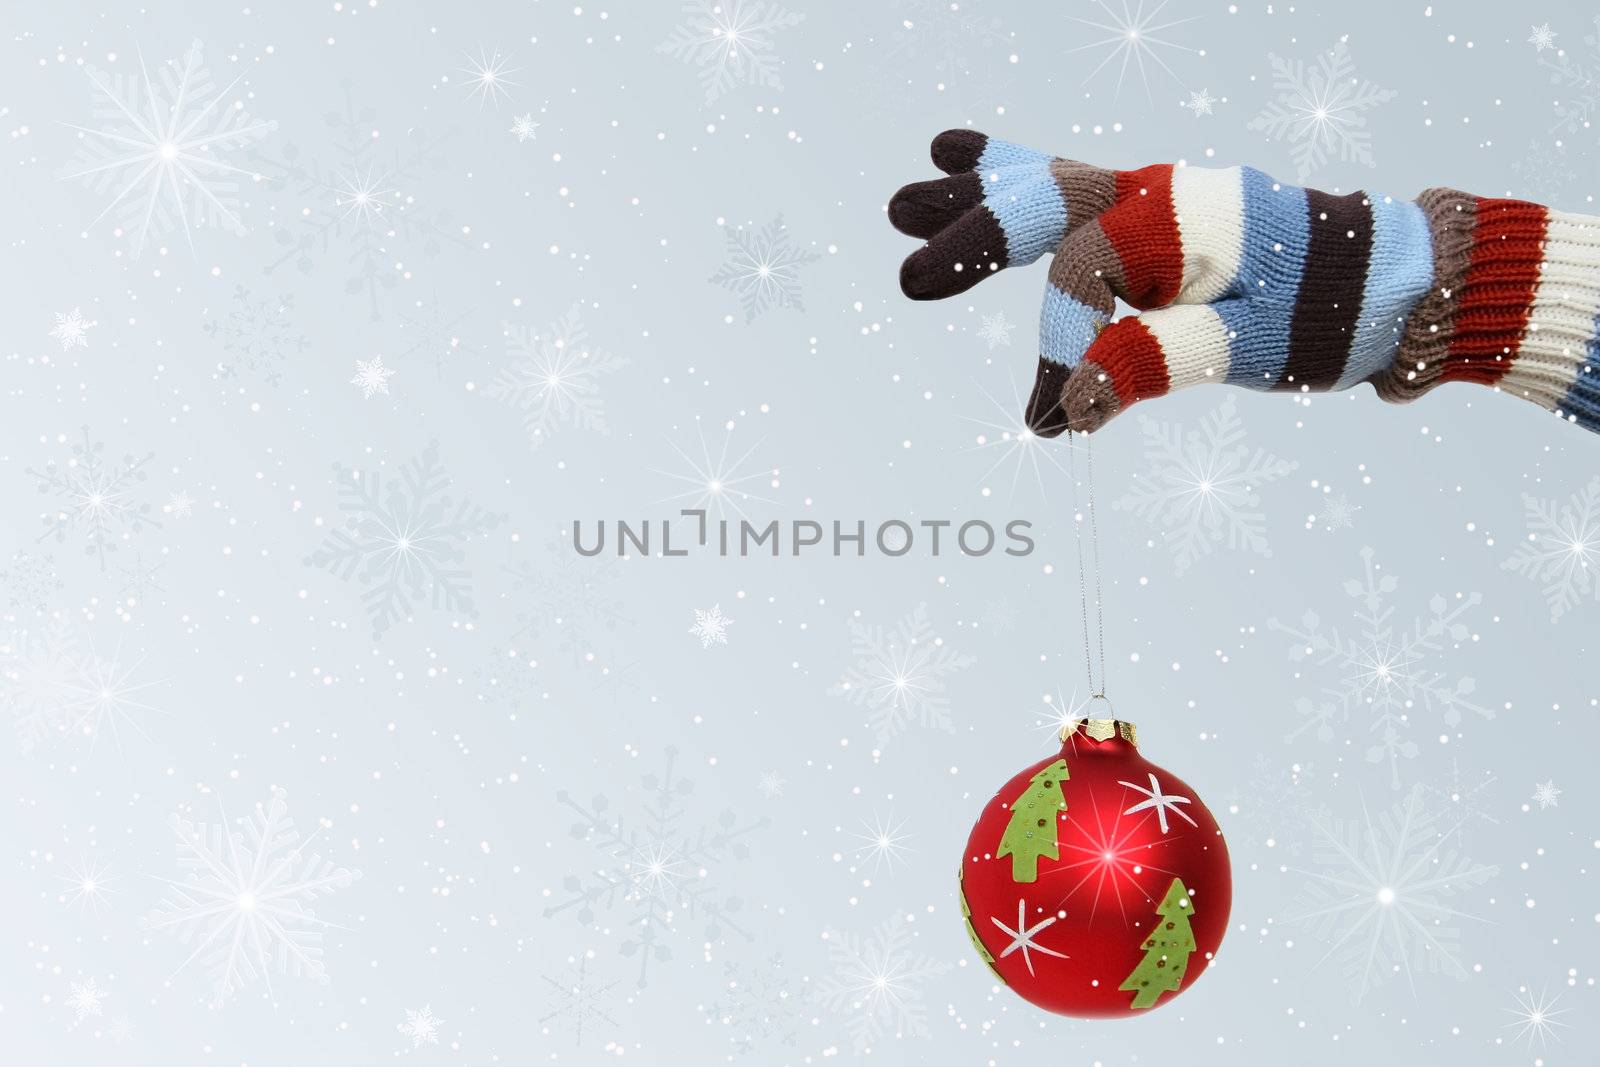 Winter mitten holding a Christmas ball